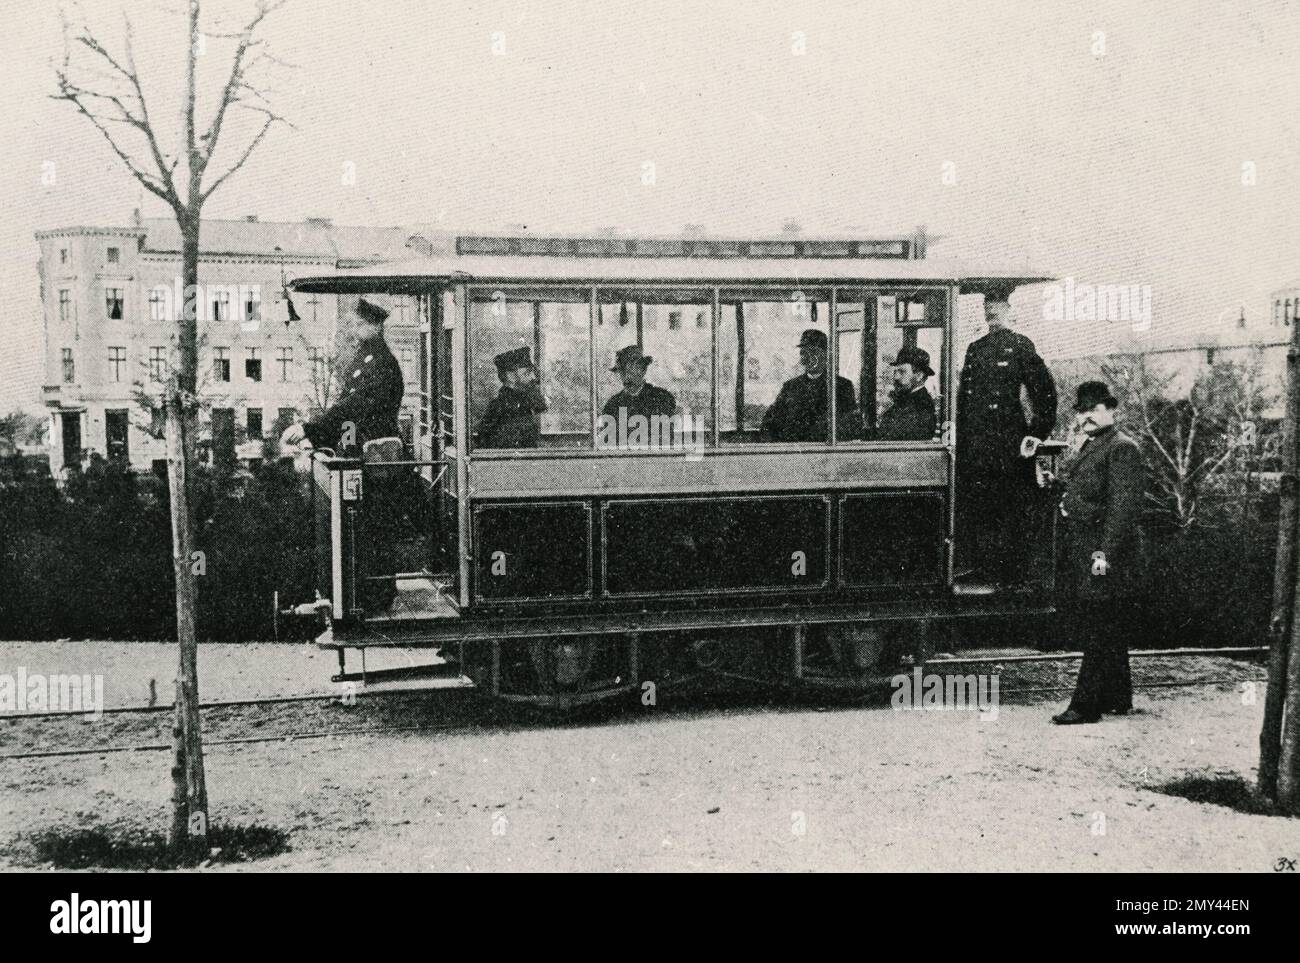 El primer tranvía eléctrico Gross-Lichterfelde construido por Werner Siemens y Halske, Berlín, Alemania 1881 Foto de stock